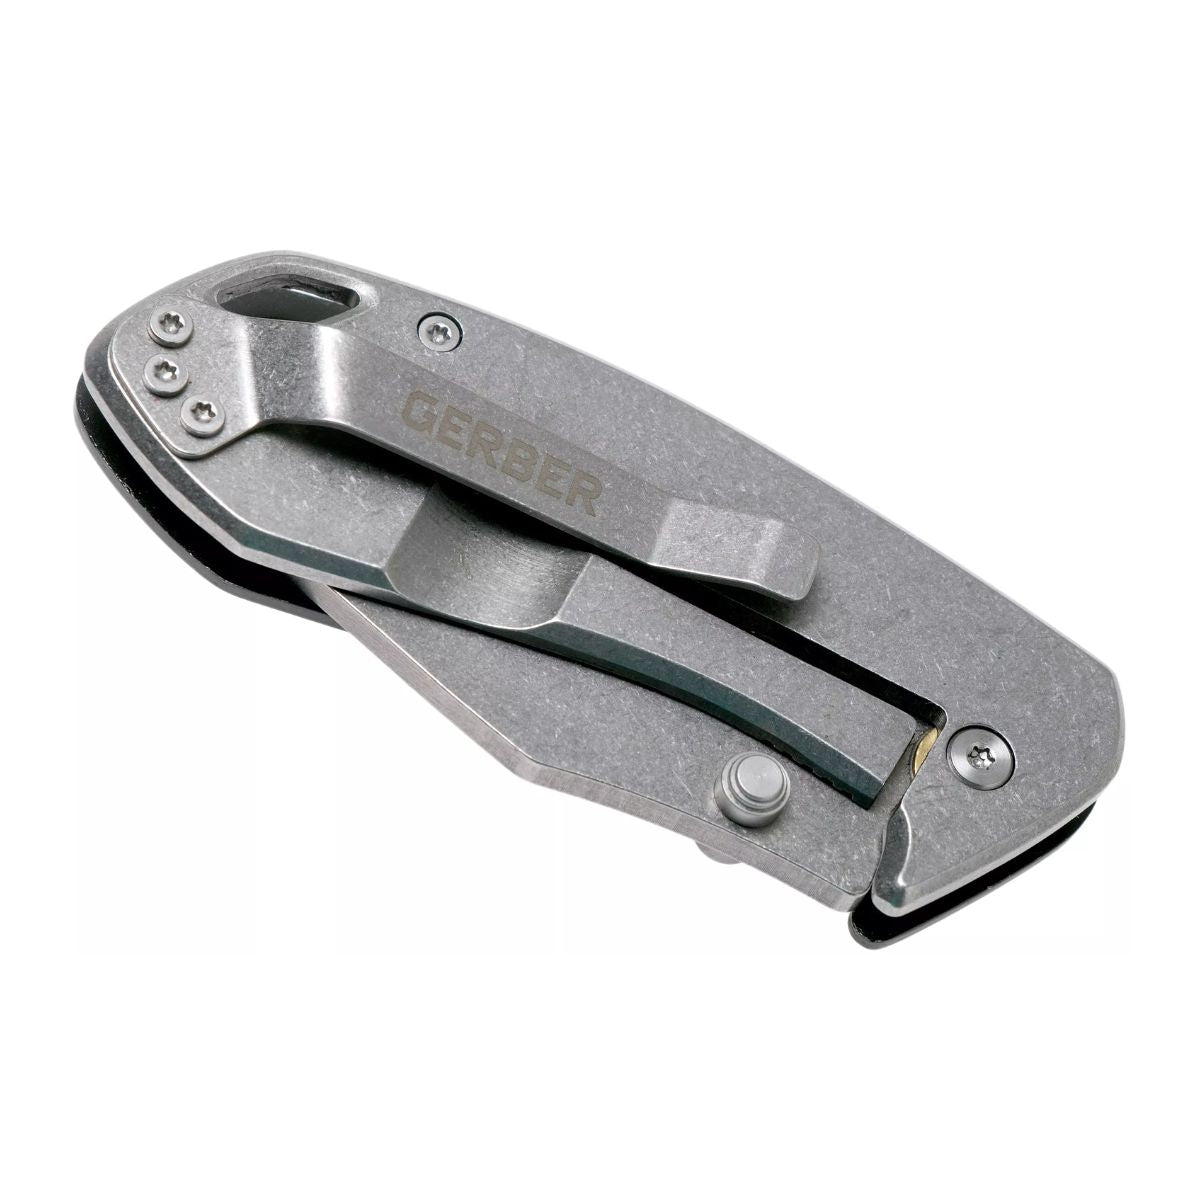 Gerber Kettlebell Clip Folding Knife - Grey Blister - 7